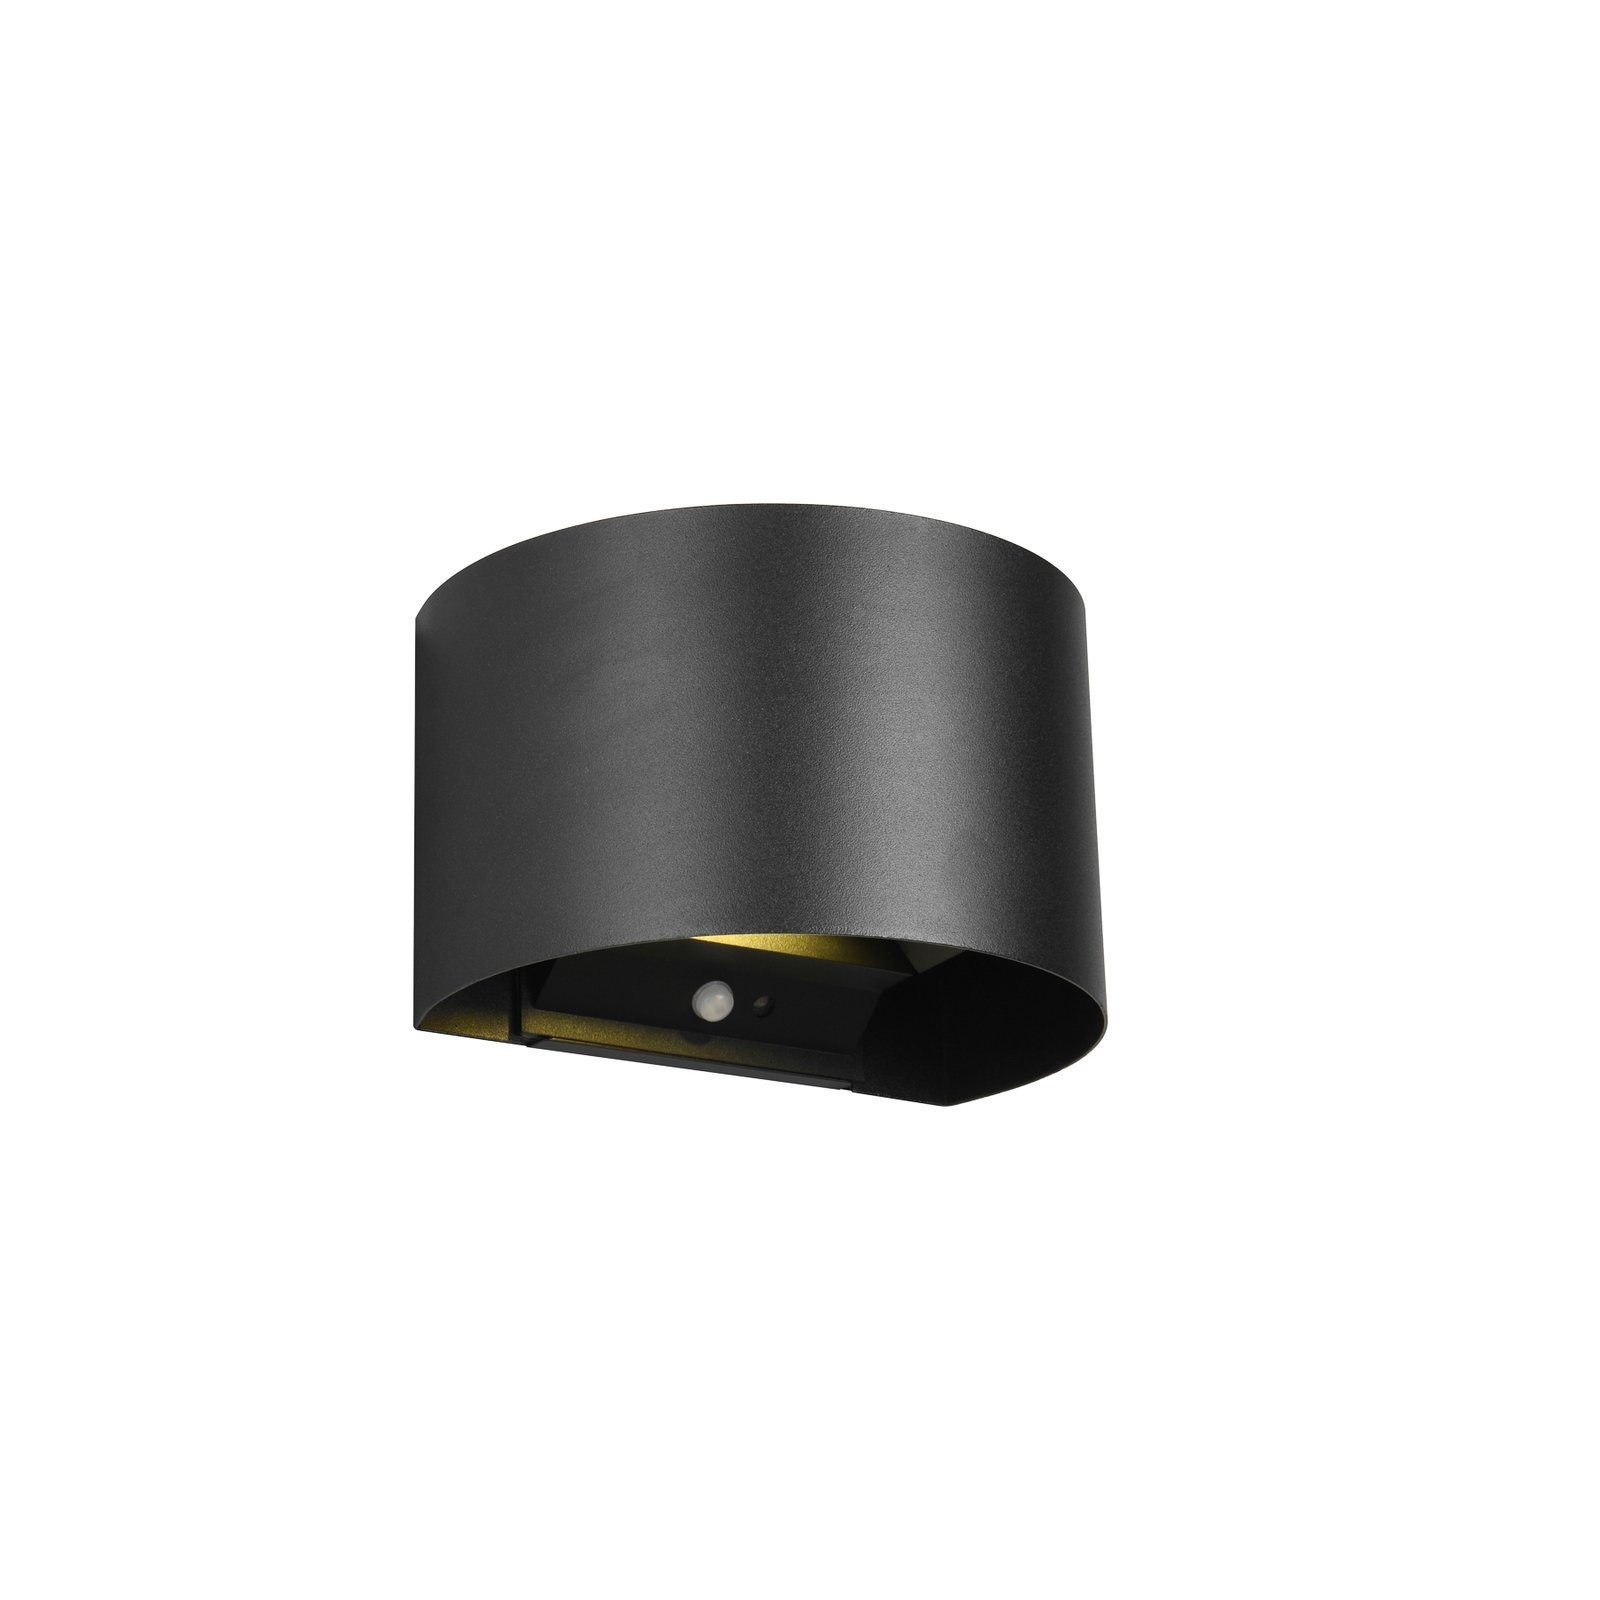 LED įkraunamas lauko sieninis šviestuvas "Talent", juodas, 16 cm pločio